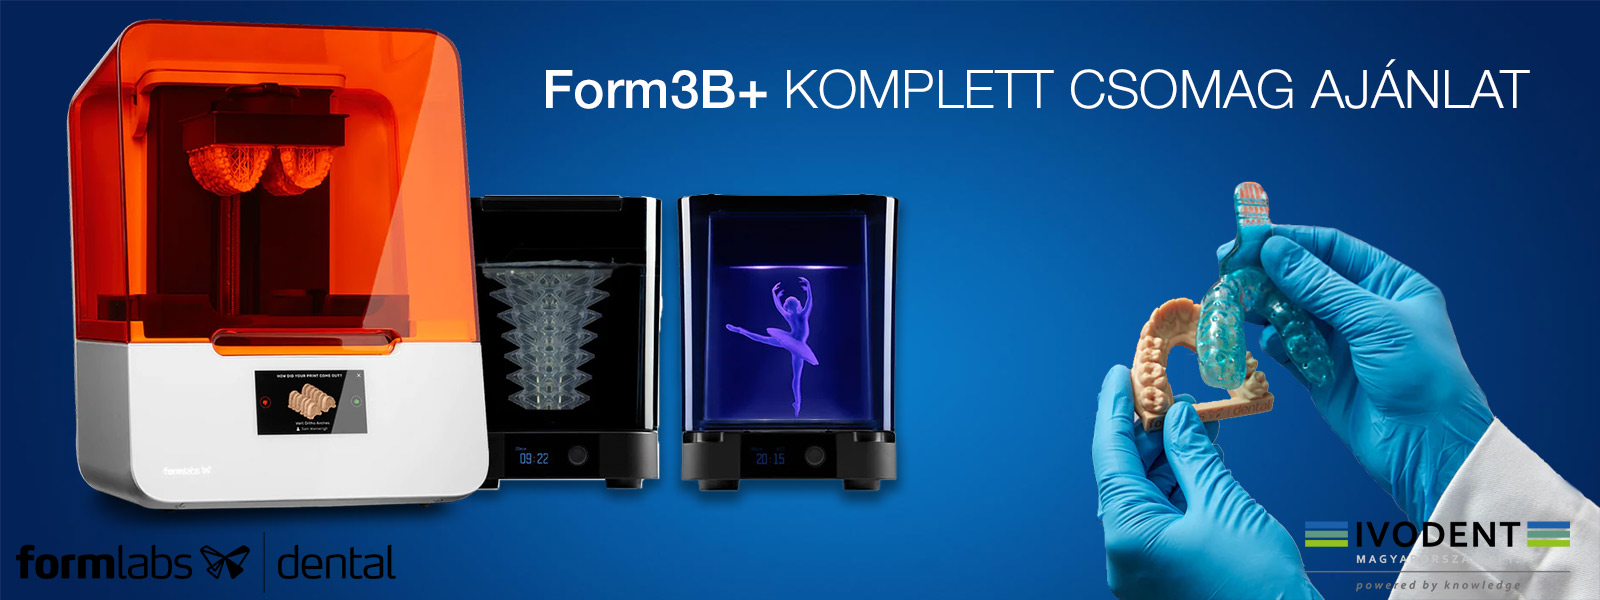 Formlabs Form3B+ fogászati 3D nyomtató